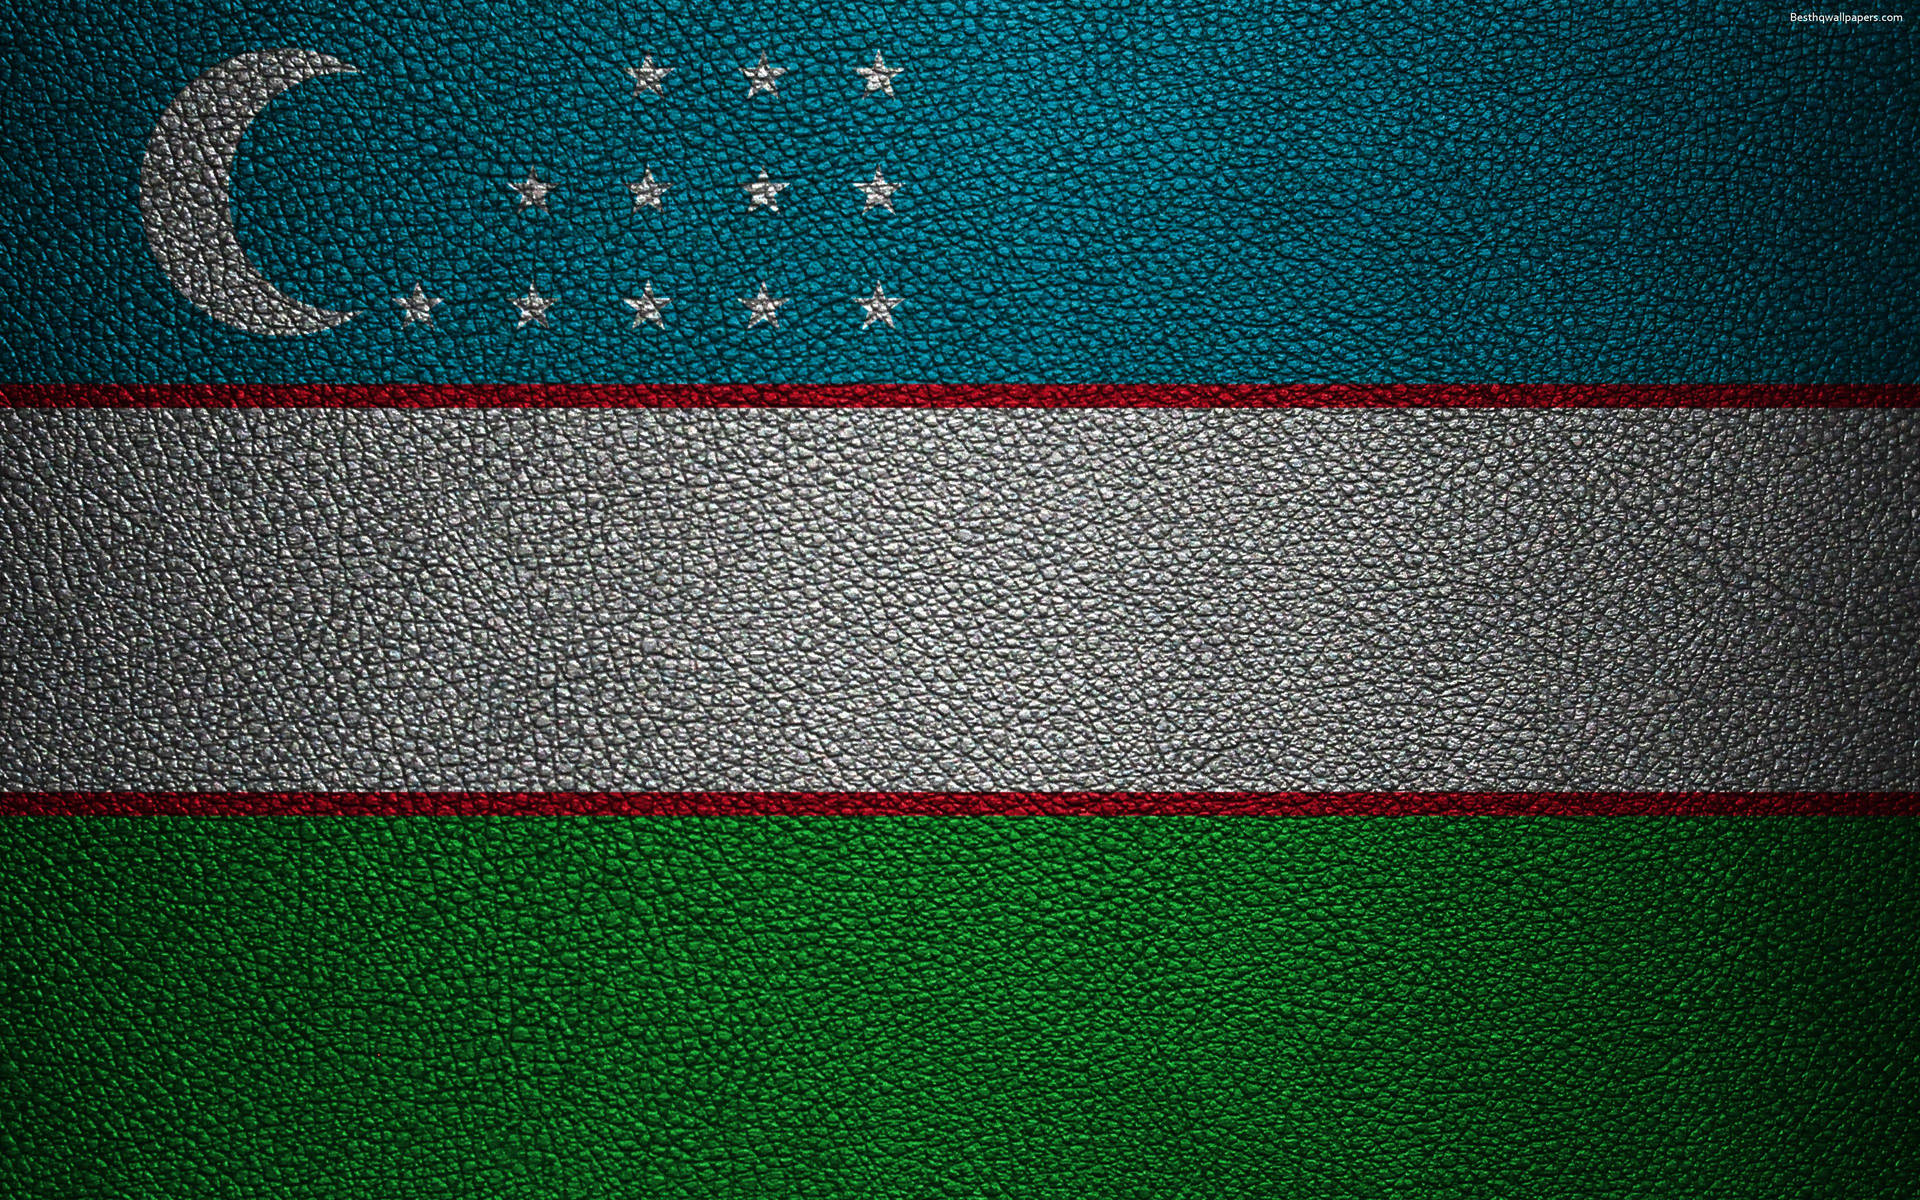 Banderade Uzbekistán En Textura De Cuero Fondo de pantalla